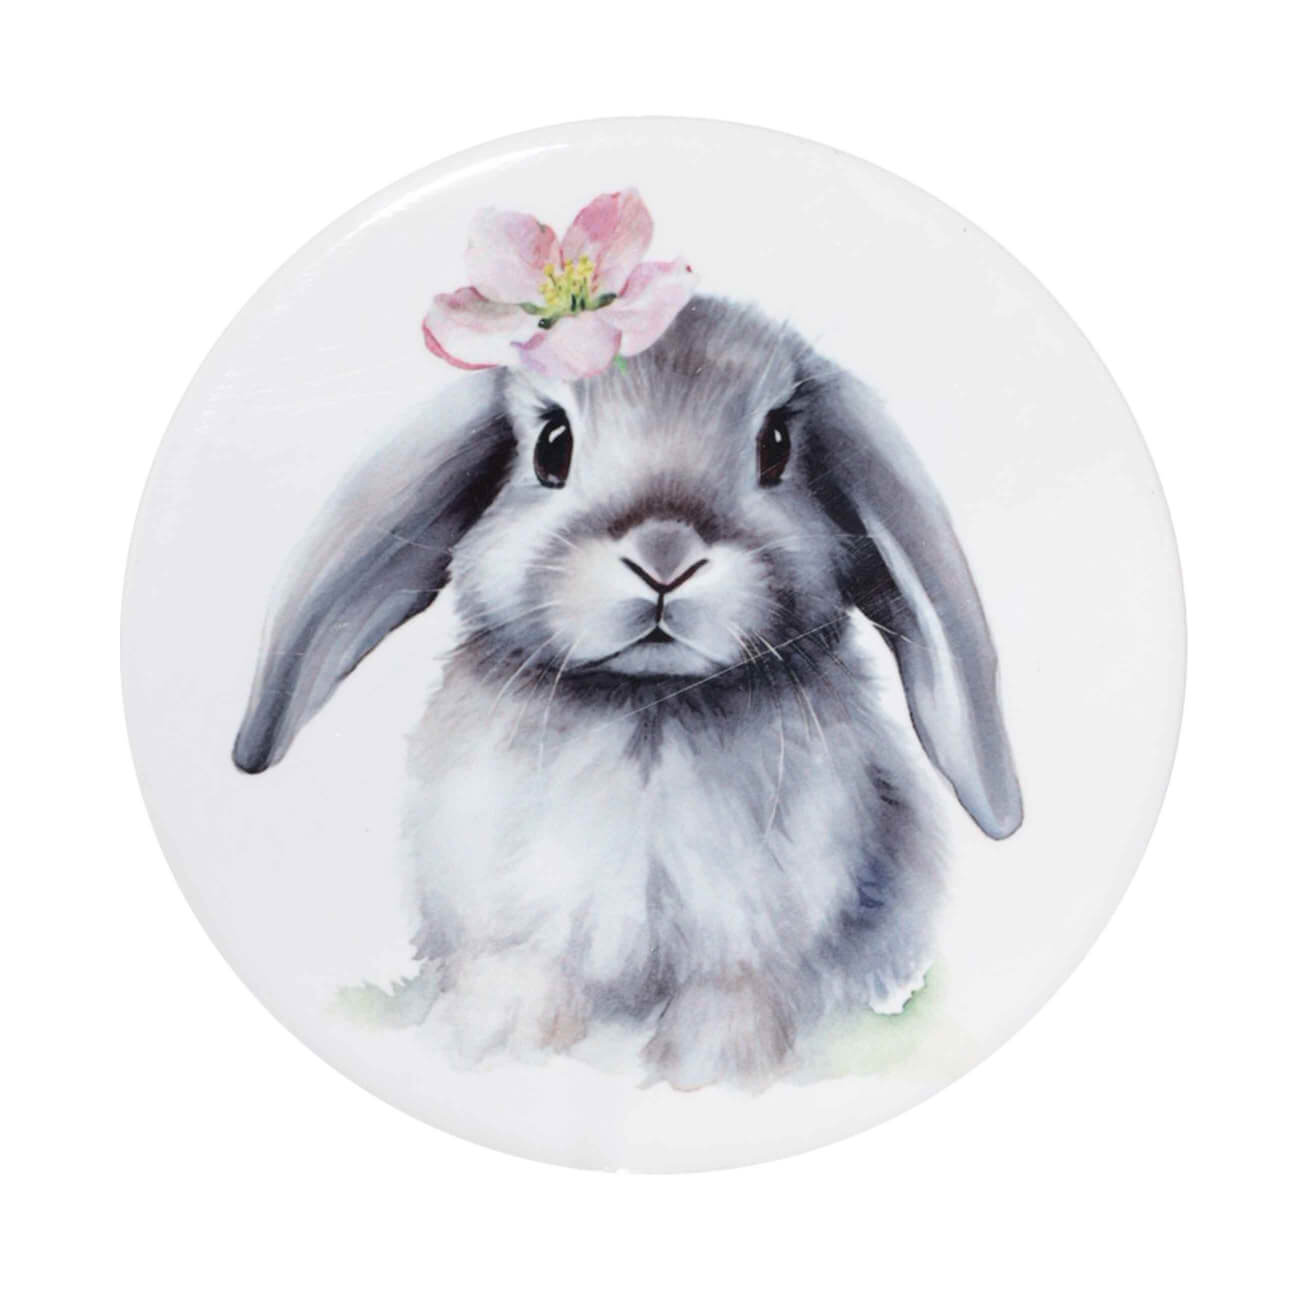 Подставка под кружку, 11 см, керамика/пробка, круглая, белая, Кролик с цветком, Pure Easter